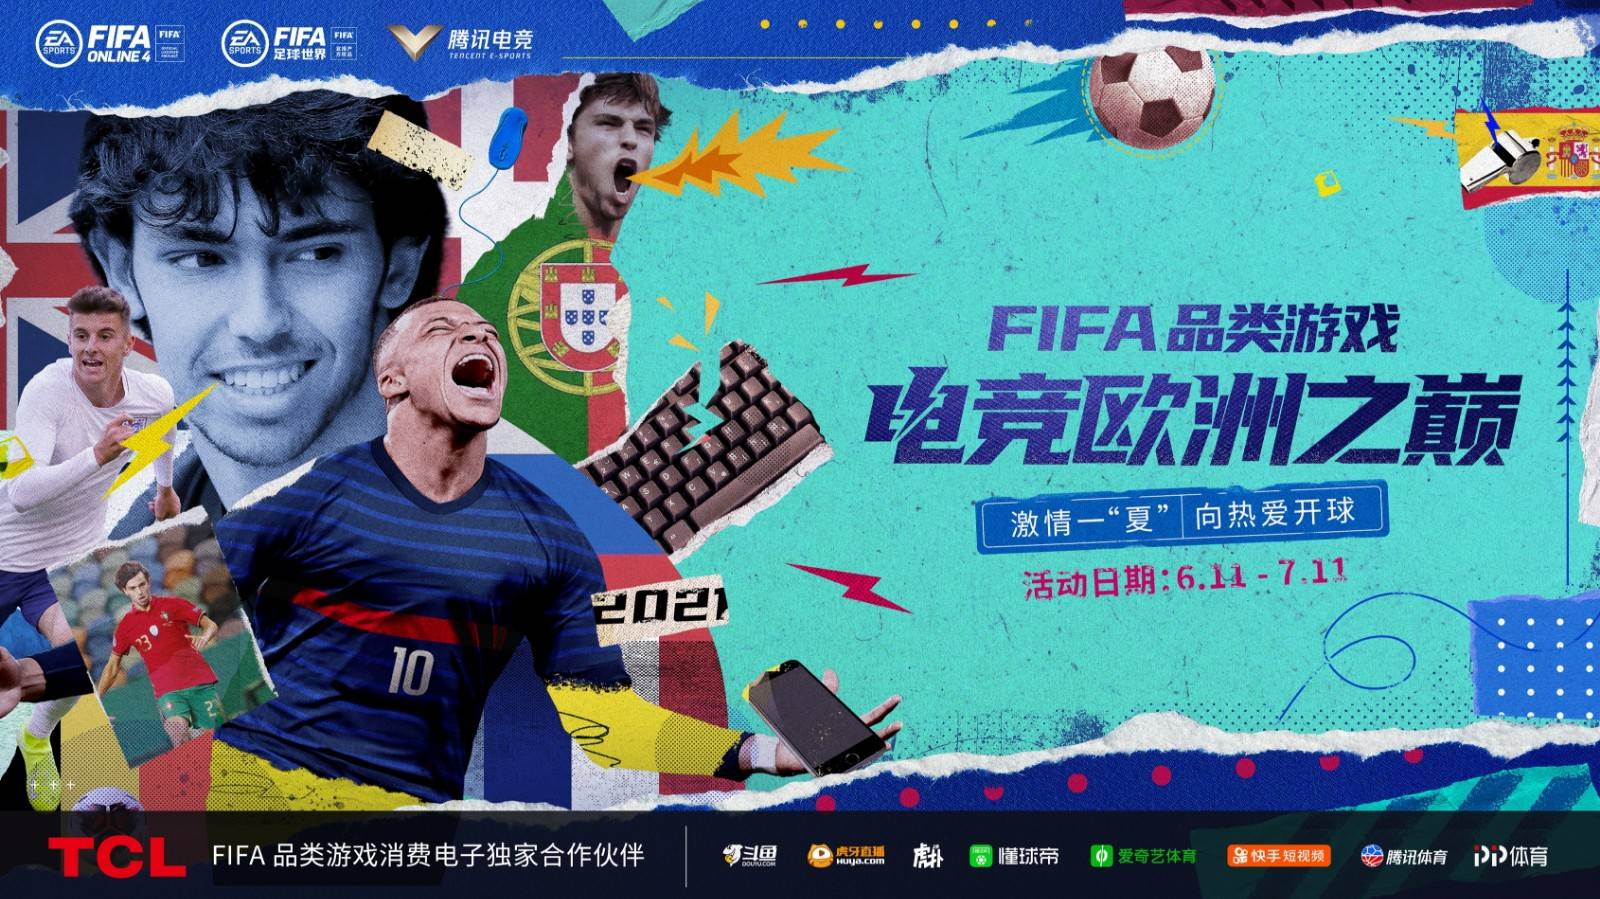 FIFA品类游戏“电竞欧洲之巅”赛事盛典带你玩转精彩6月